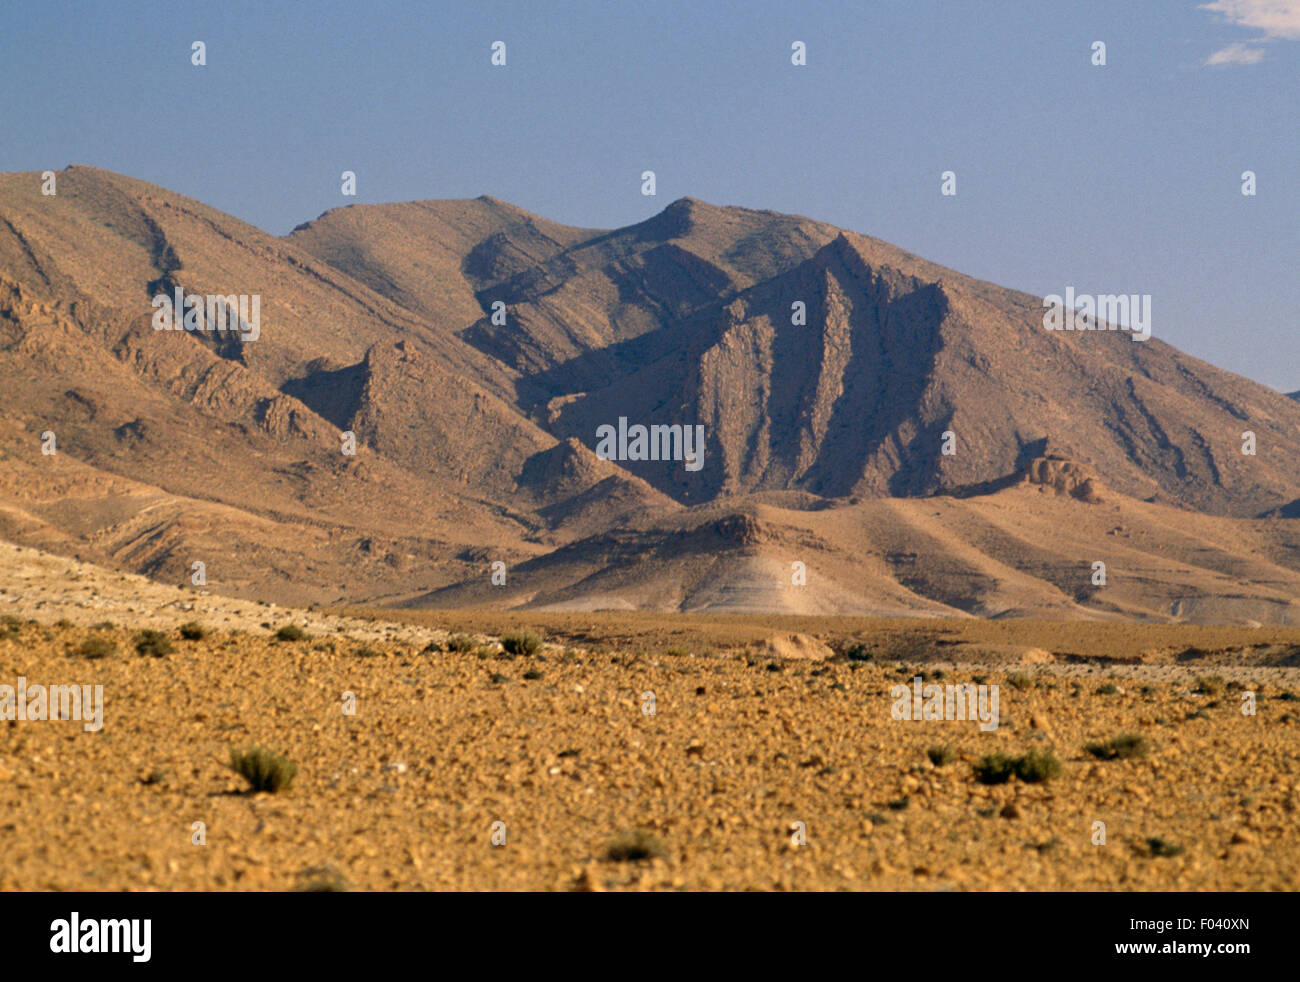 Le formazioni rocciose vicino Tolga, deserto del Sahara, Algeria. Foto Stock